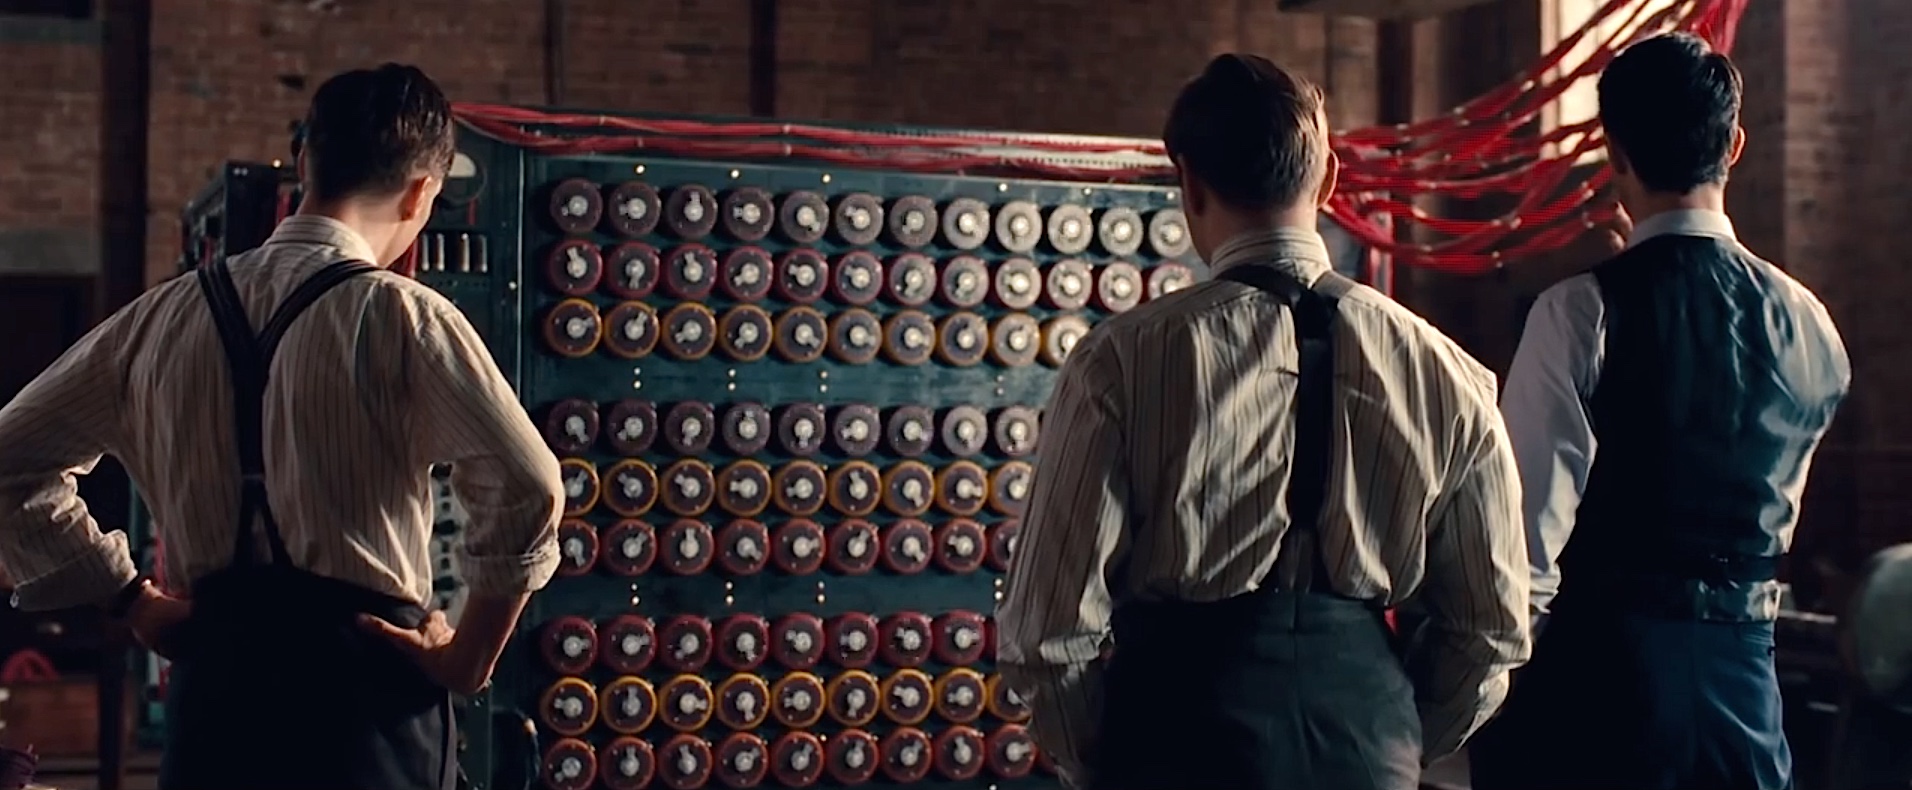 La "bombe" de Turing dont il est question dans le film est cette machine électro-mécanique destinée à casser le code du système de cryptage nazi "Enigma". (Capture d'écran de la bande annonce du film "The Imitation Game")